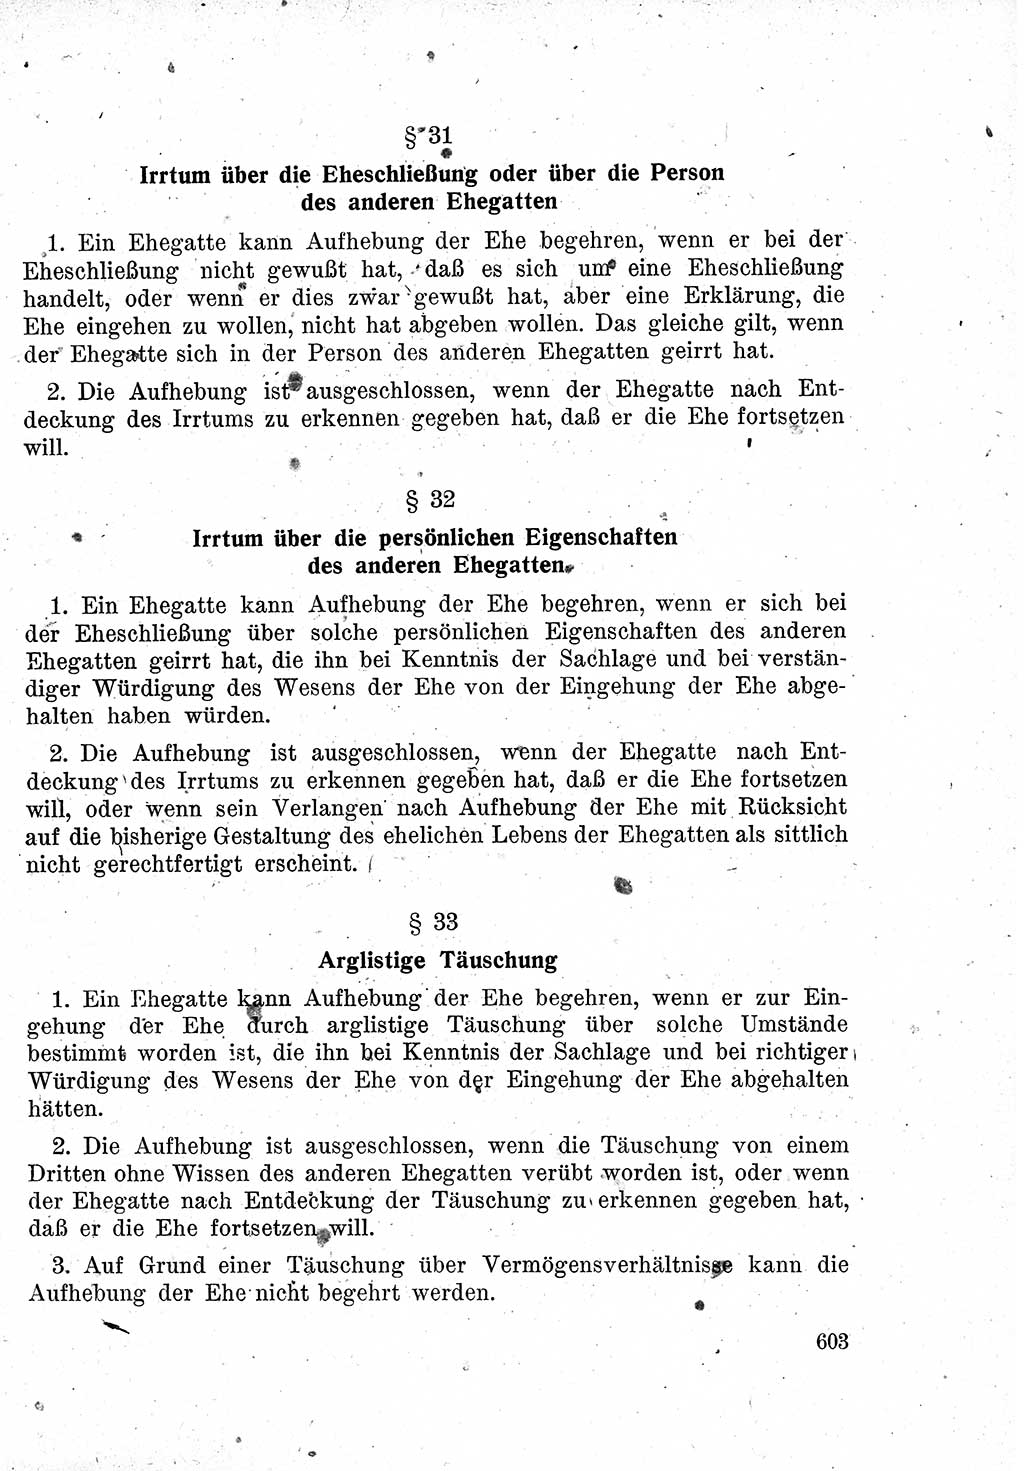 Das Recht der Besatzungsmacht (Deutschland), Proklamationen, Deklerationen, Verordnungen, Gesetze und Bekanntmachungen 1947, Seite 603 (R. Bes. Dtl. 1947, S. 603)